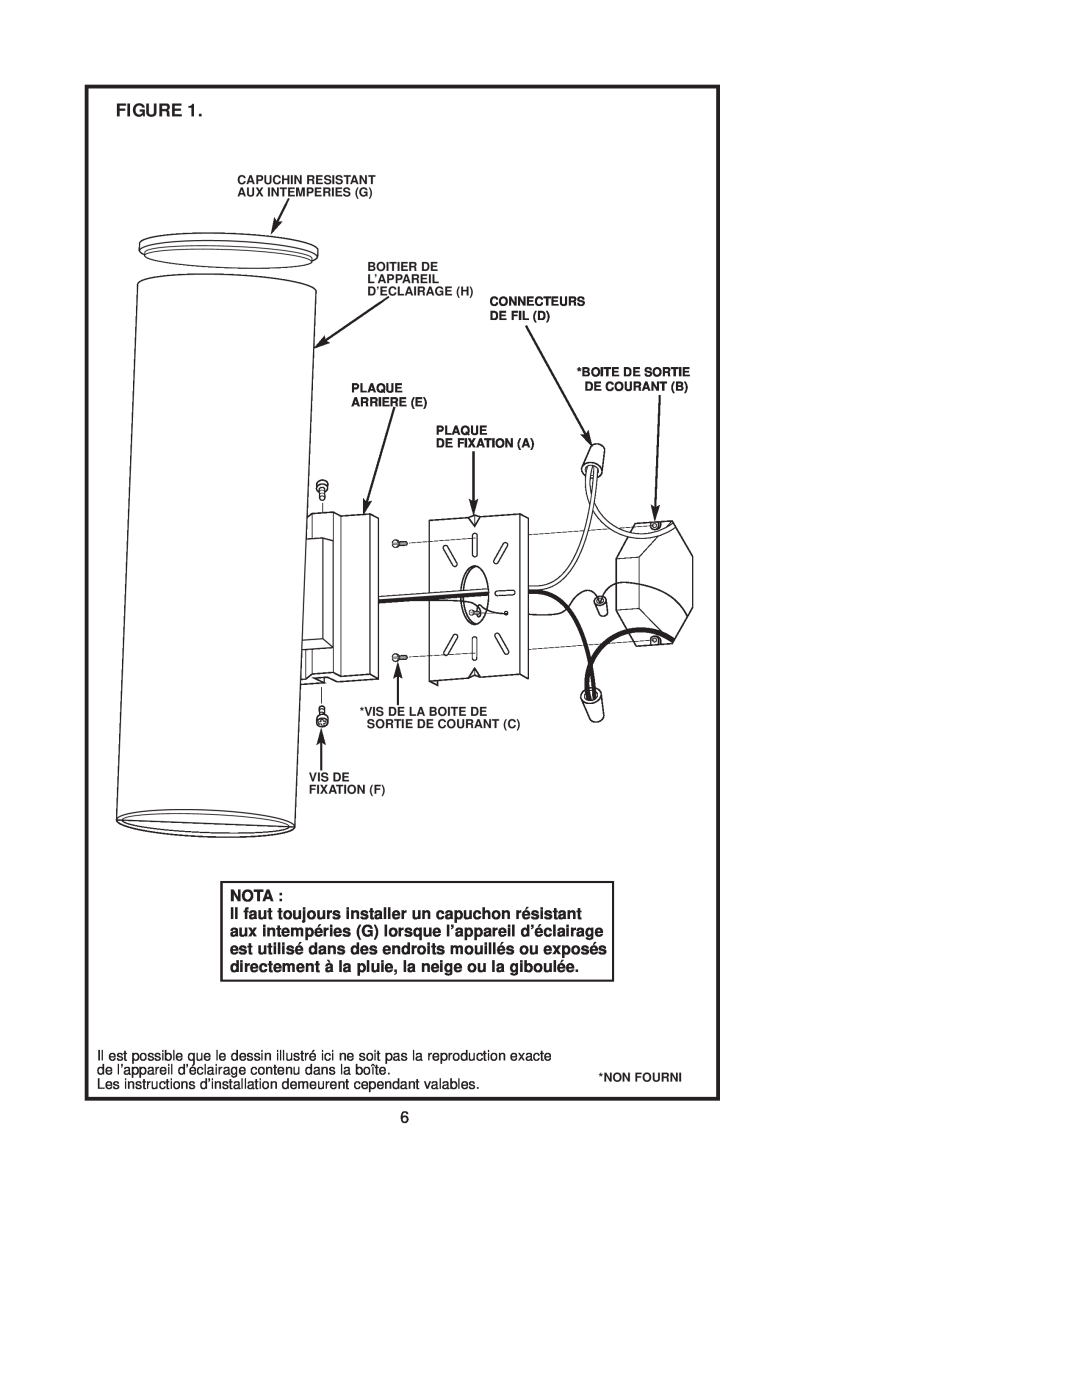 Westinghouse 121504 Nota, de l’appareil d’éclairage contenu dans la boîte, D’Eclairage H, Connecteurs, De Fil D, Plaque 